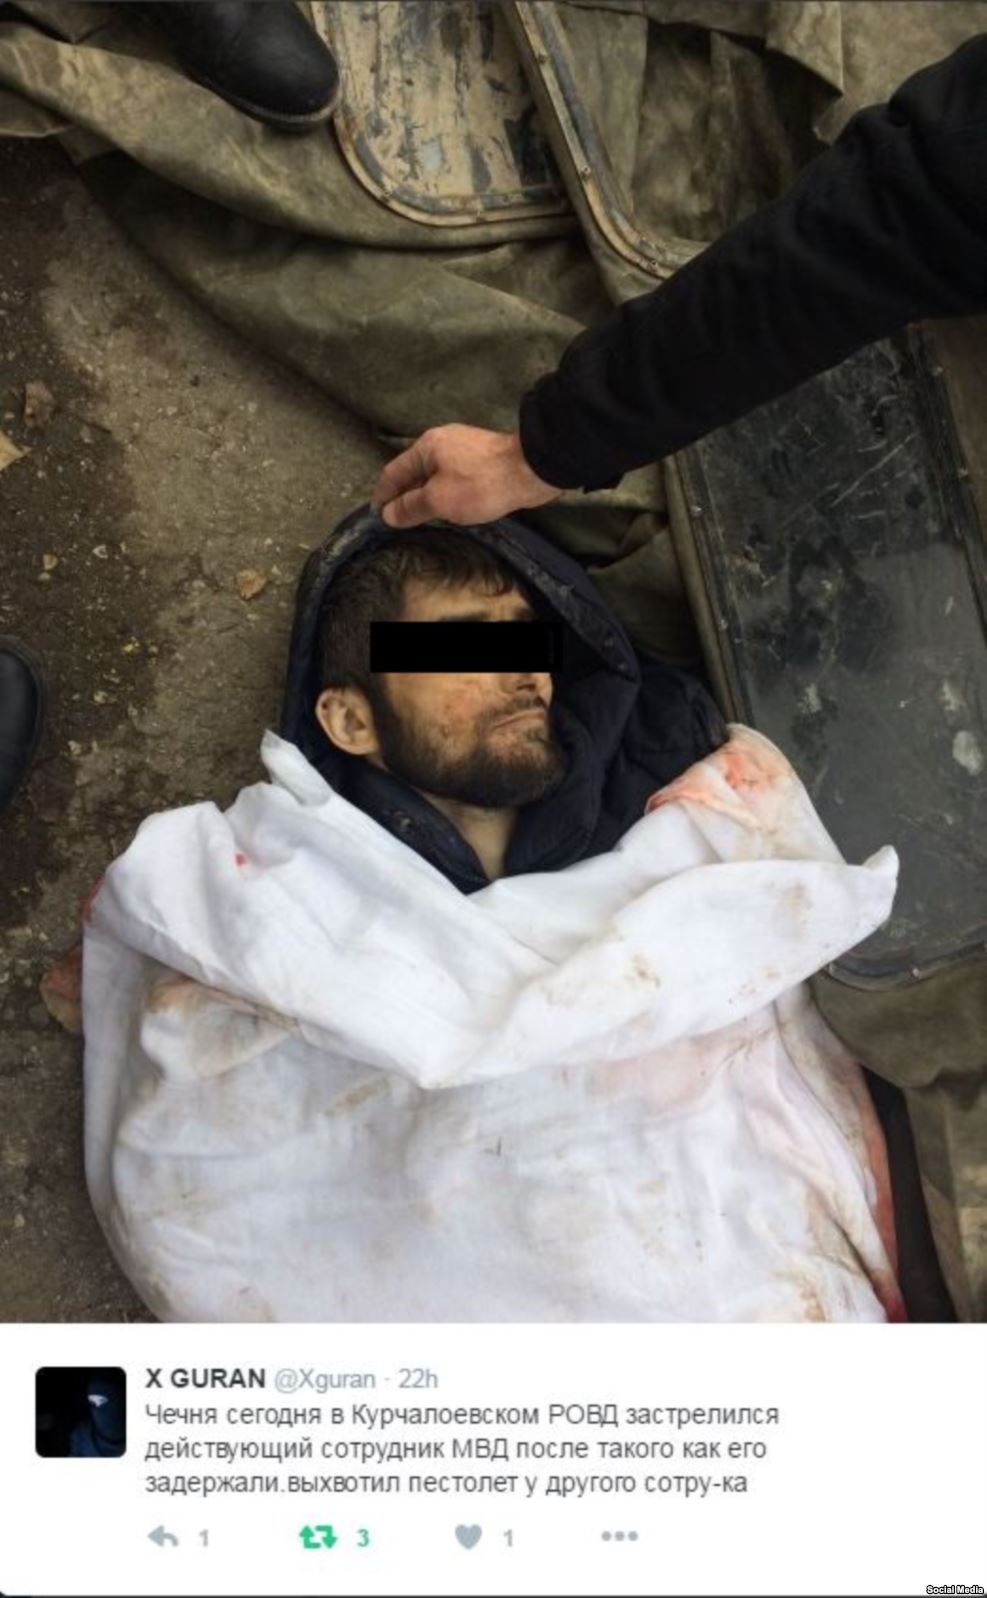 СМИ сообщили подробности об ужасном самоубийстве личного охранника Кадырова в Чечне: мужчина выхватил пистолет у полицейского и застрелился